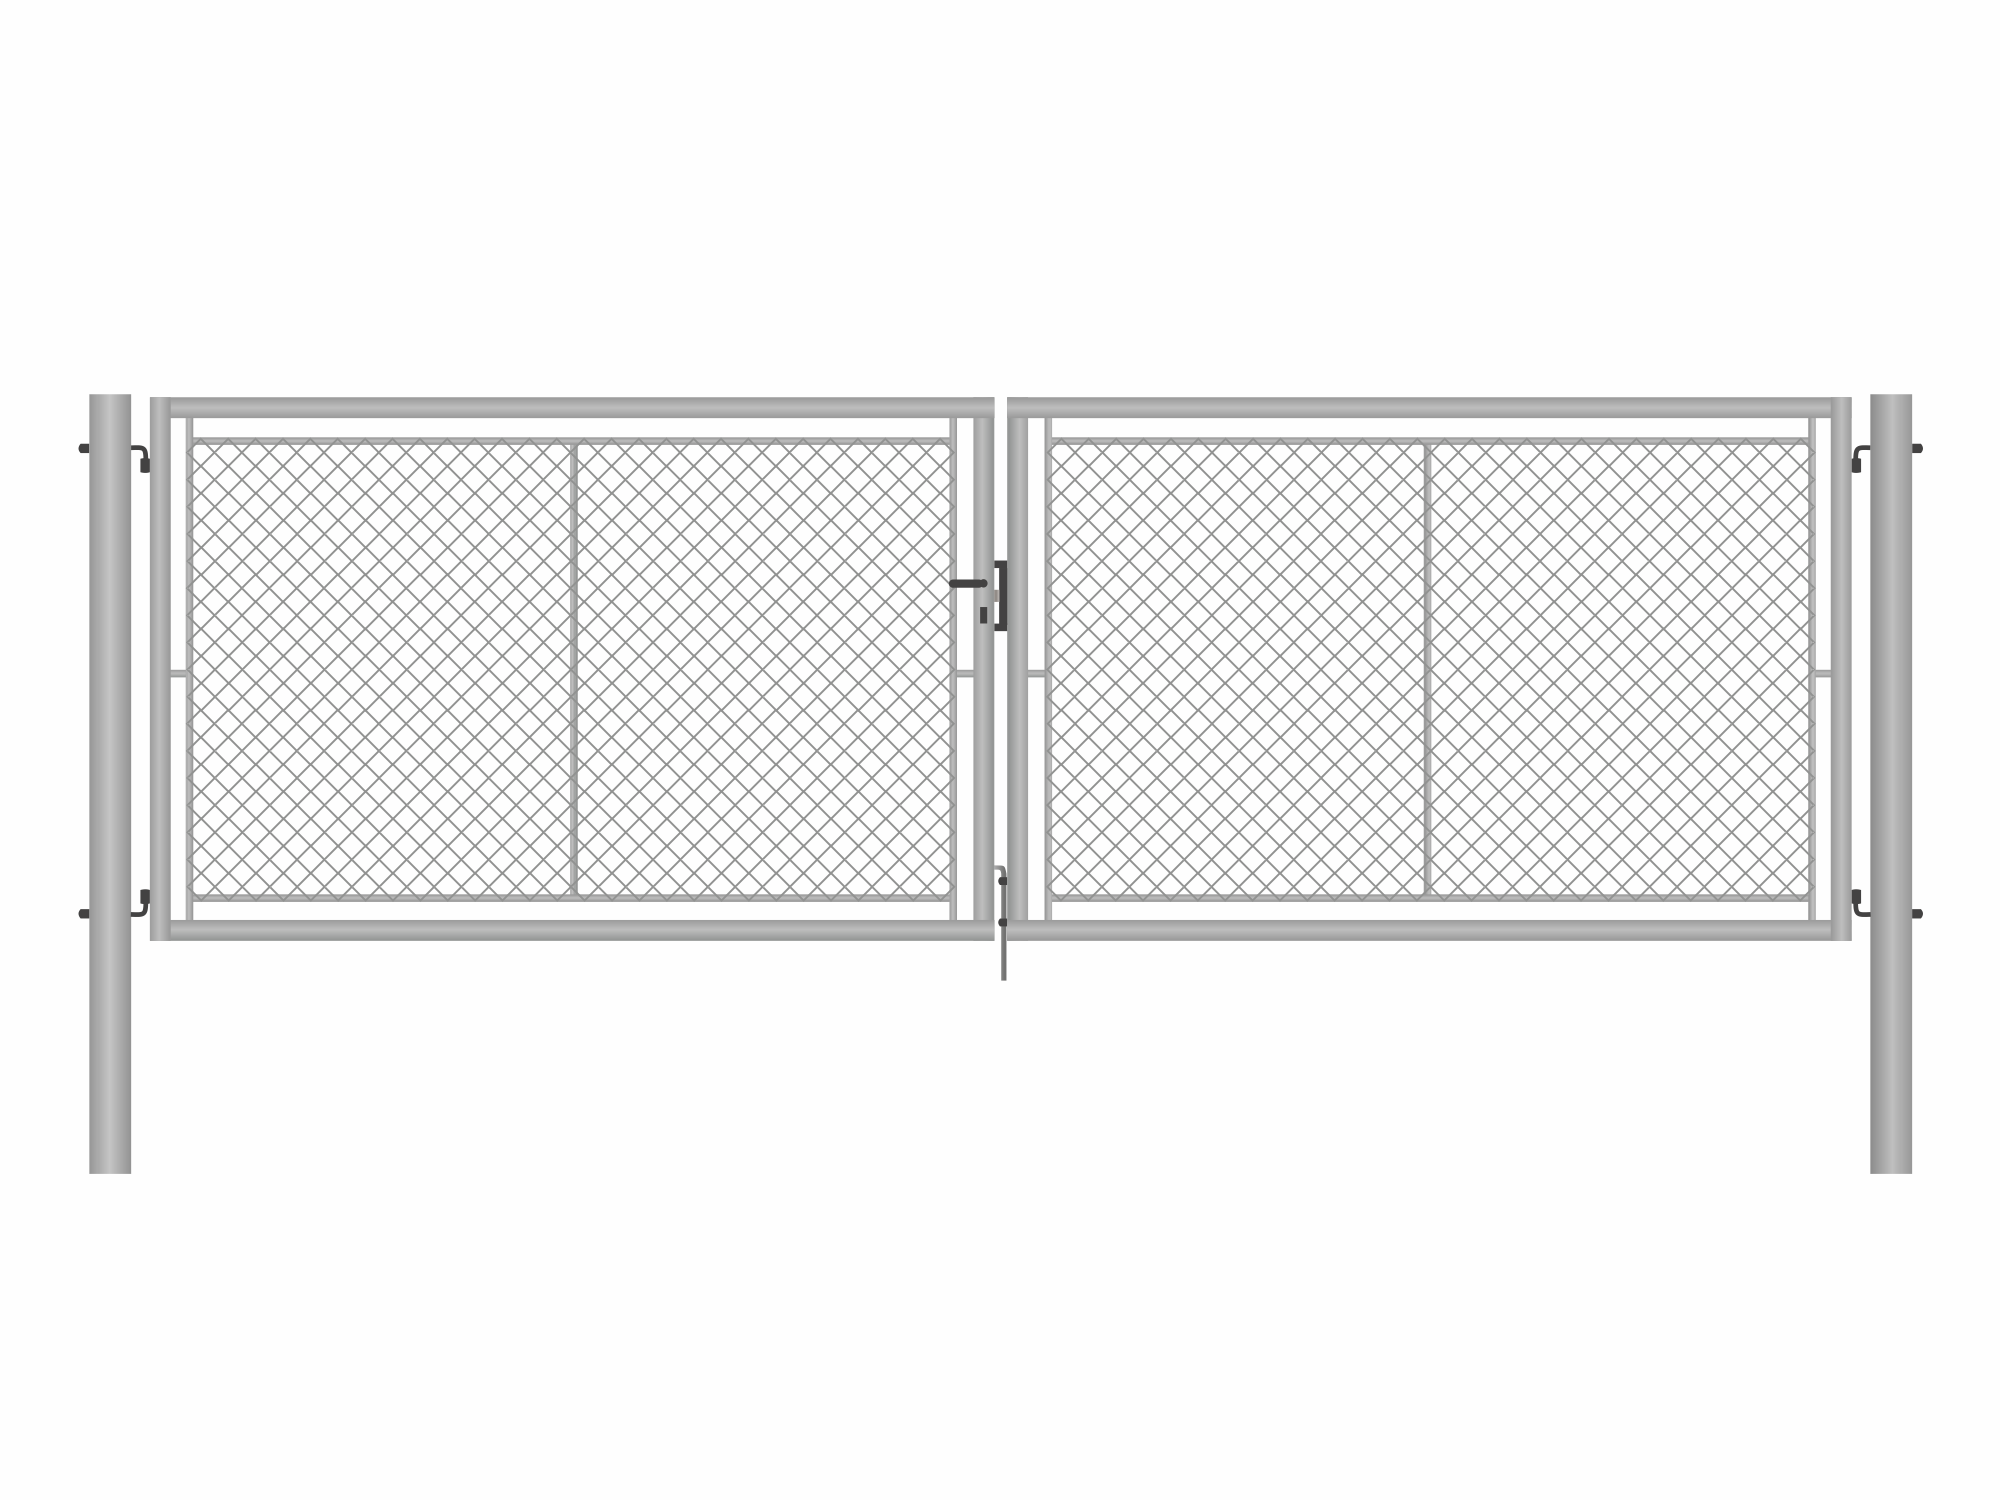 Brána zahradní dvoukřídlá pozink, výška 155 x 350 cm, FAB, s výplní klasického pletiva PLOTY Sklad5 9870 535